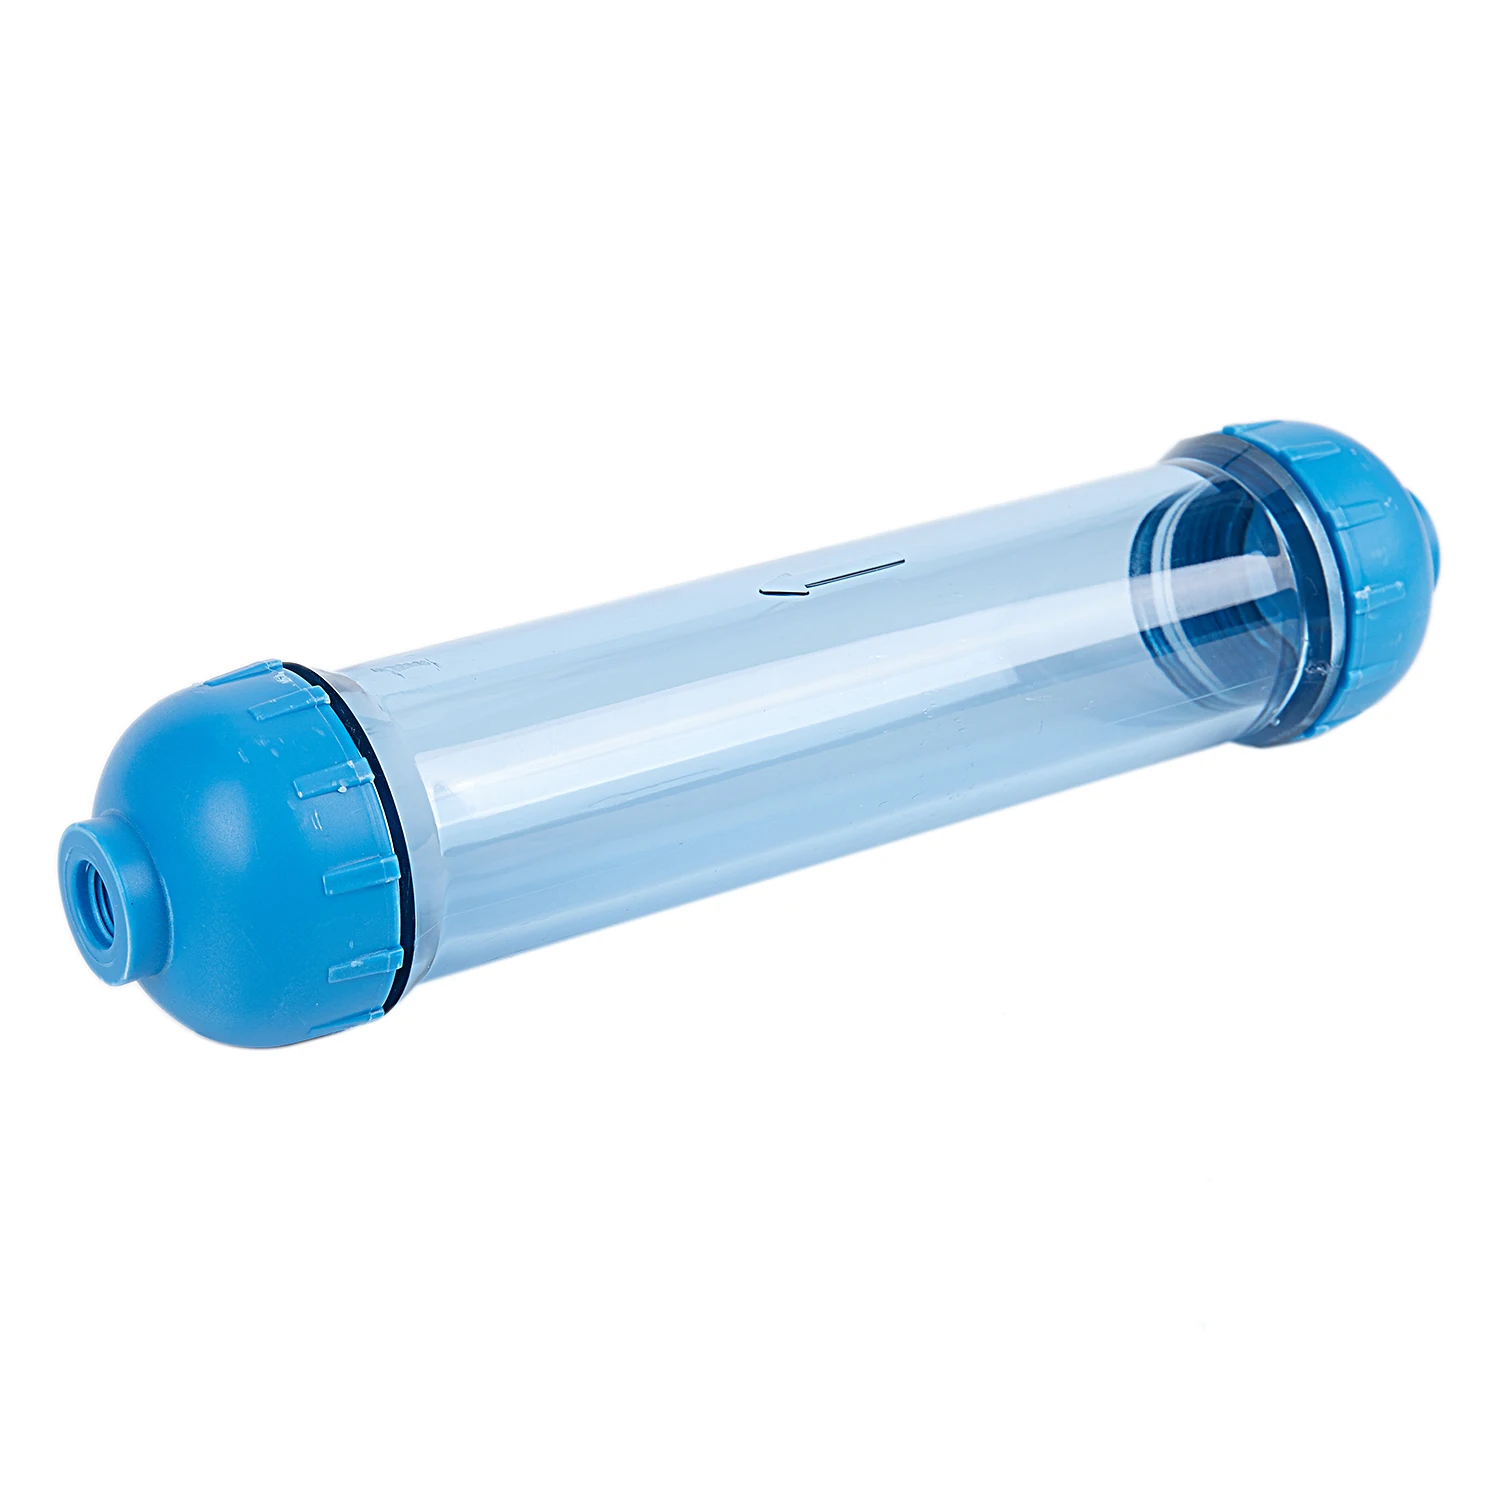 Корпус водяного фильтра DIY Fill T33 корпус фильтра трубки прозрачный обратного осмоса синий